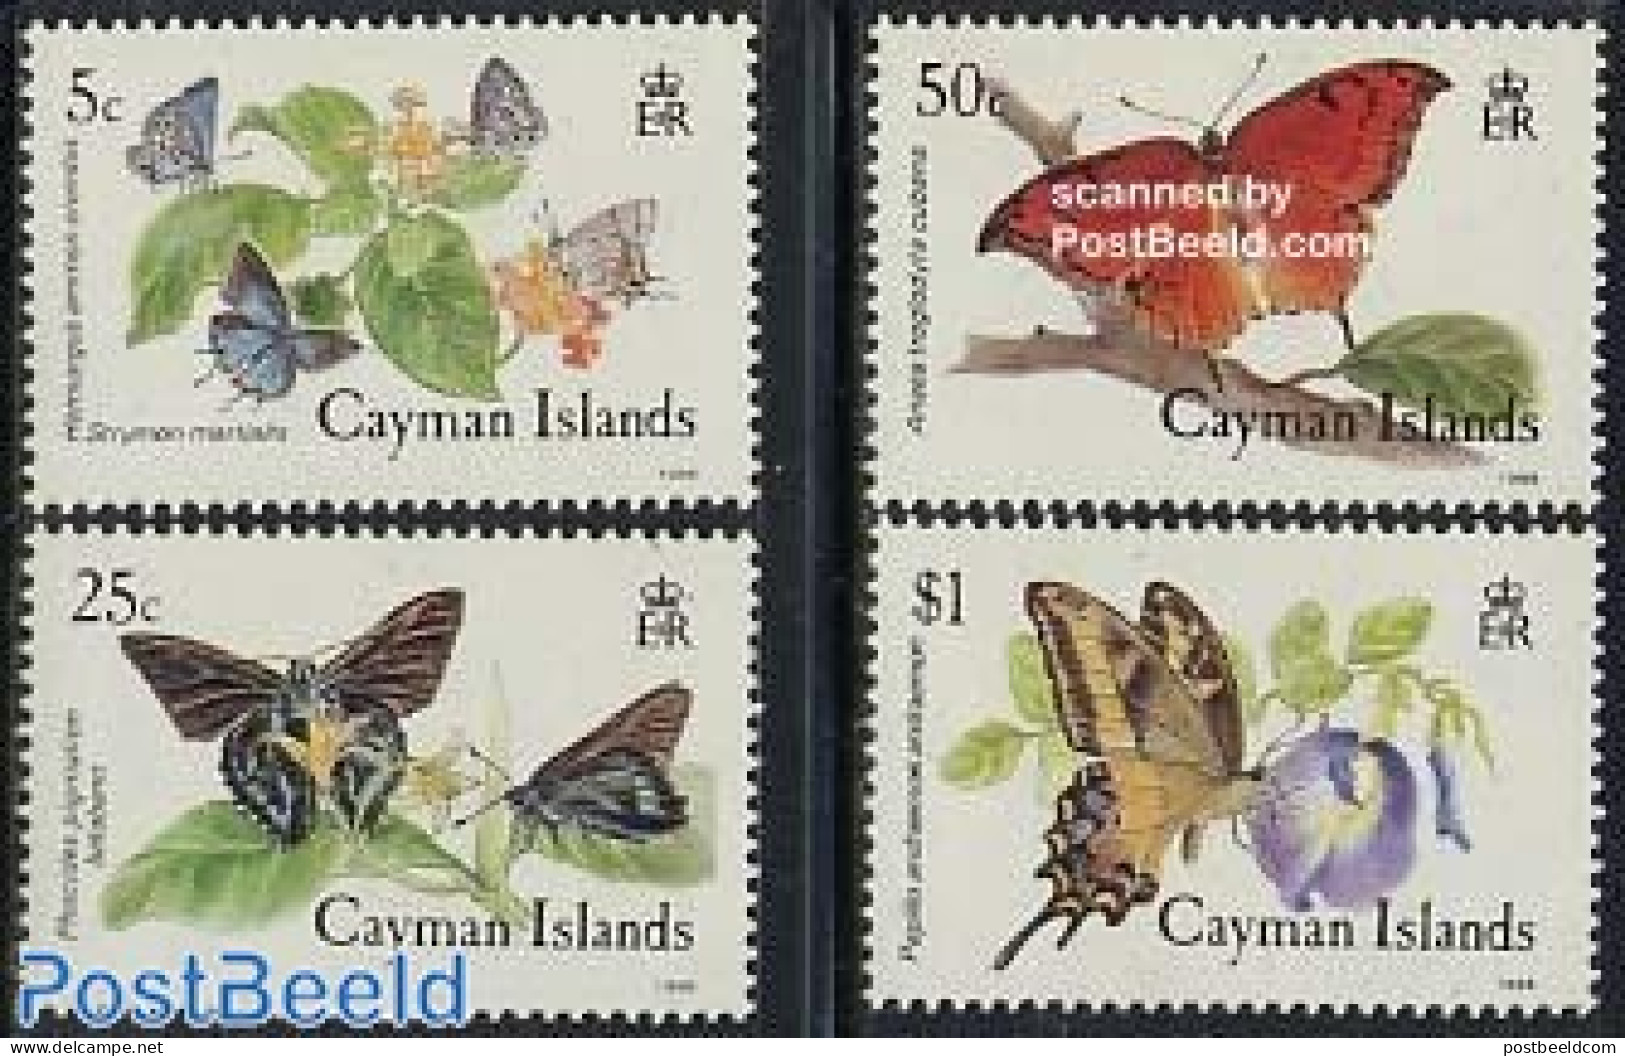 Cayman Islands 1988 Butterflies 4v, Mint NH, Nature - Butterflies - Cayman Islands